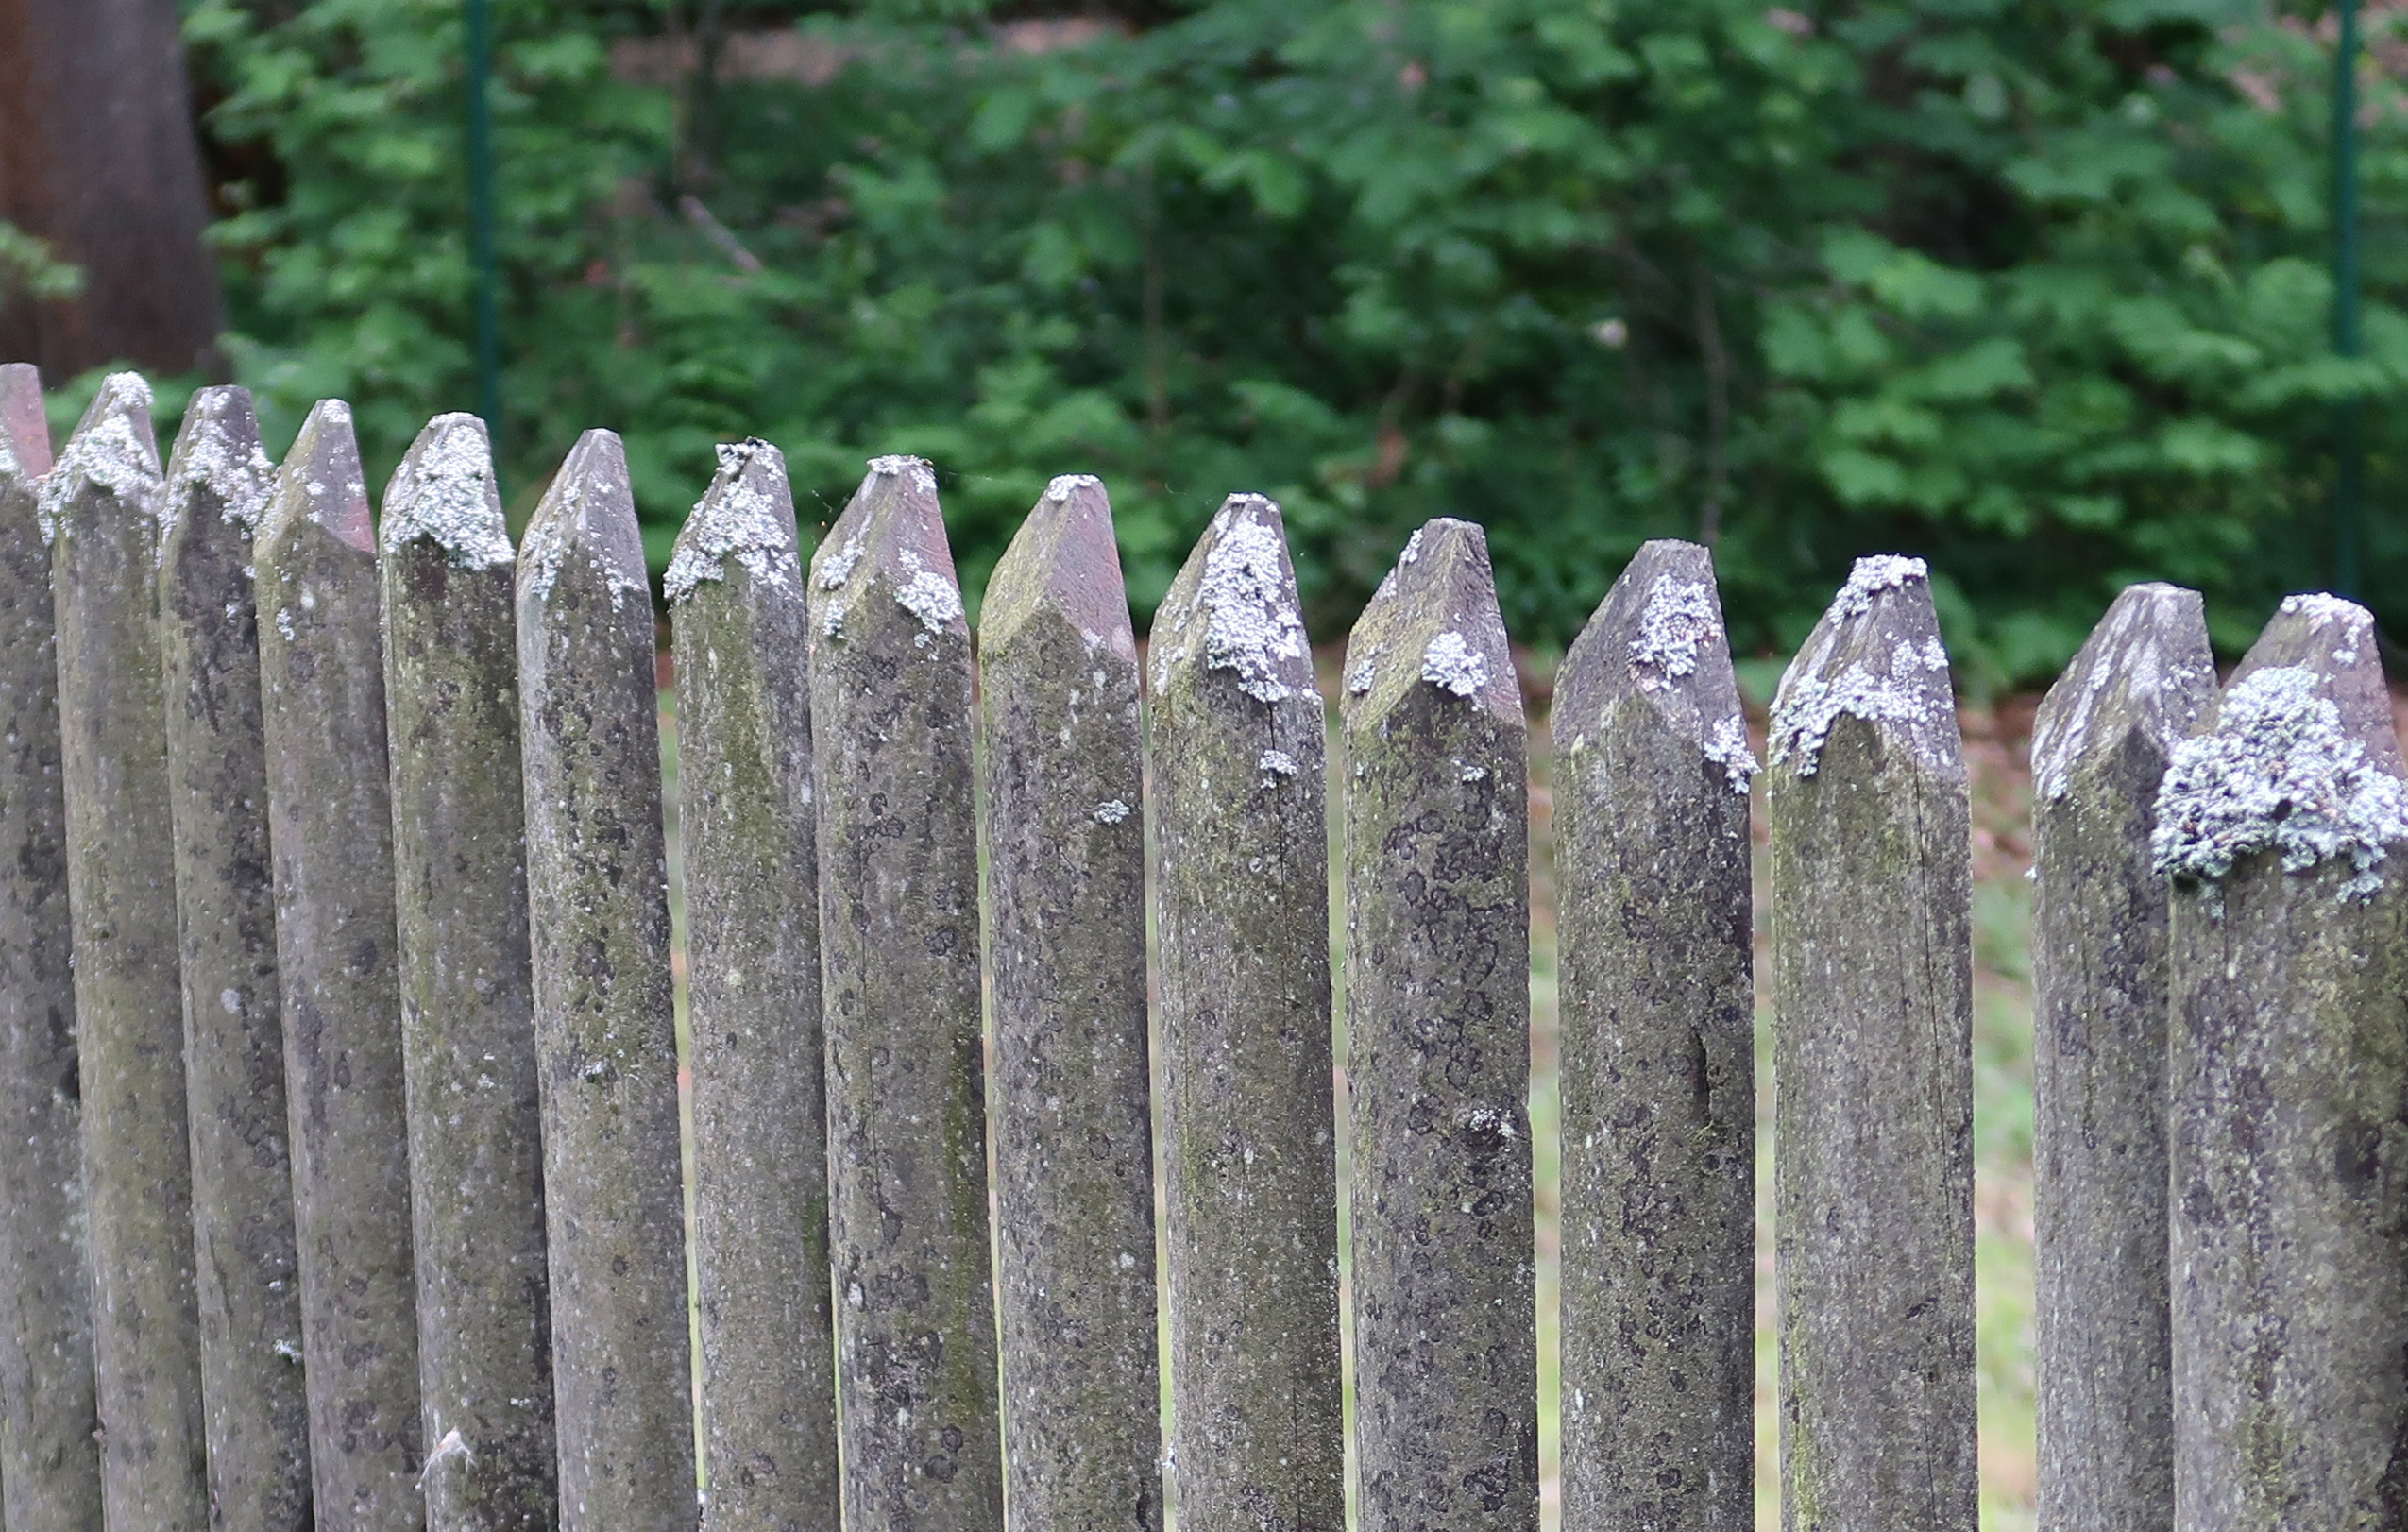                                    Dřevěný plaňkový plot, znečištěný zelenými řasami a bílými houbami.